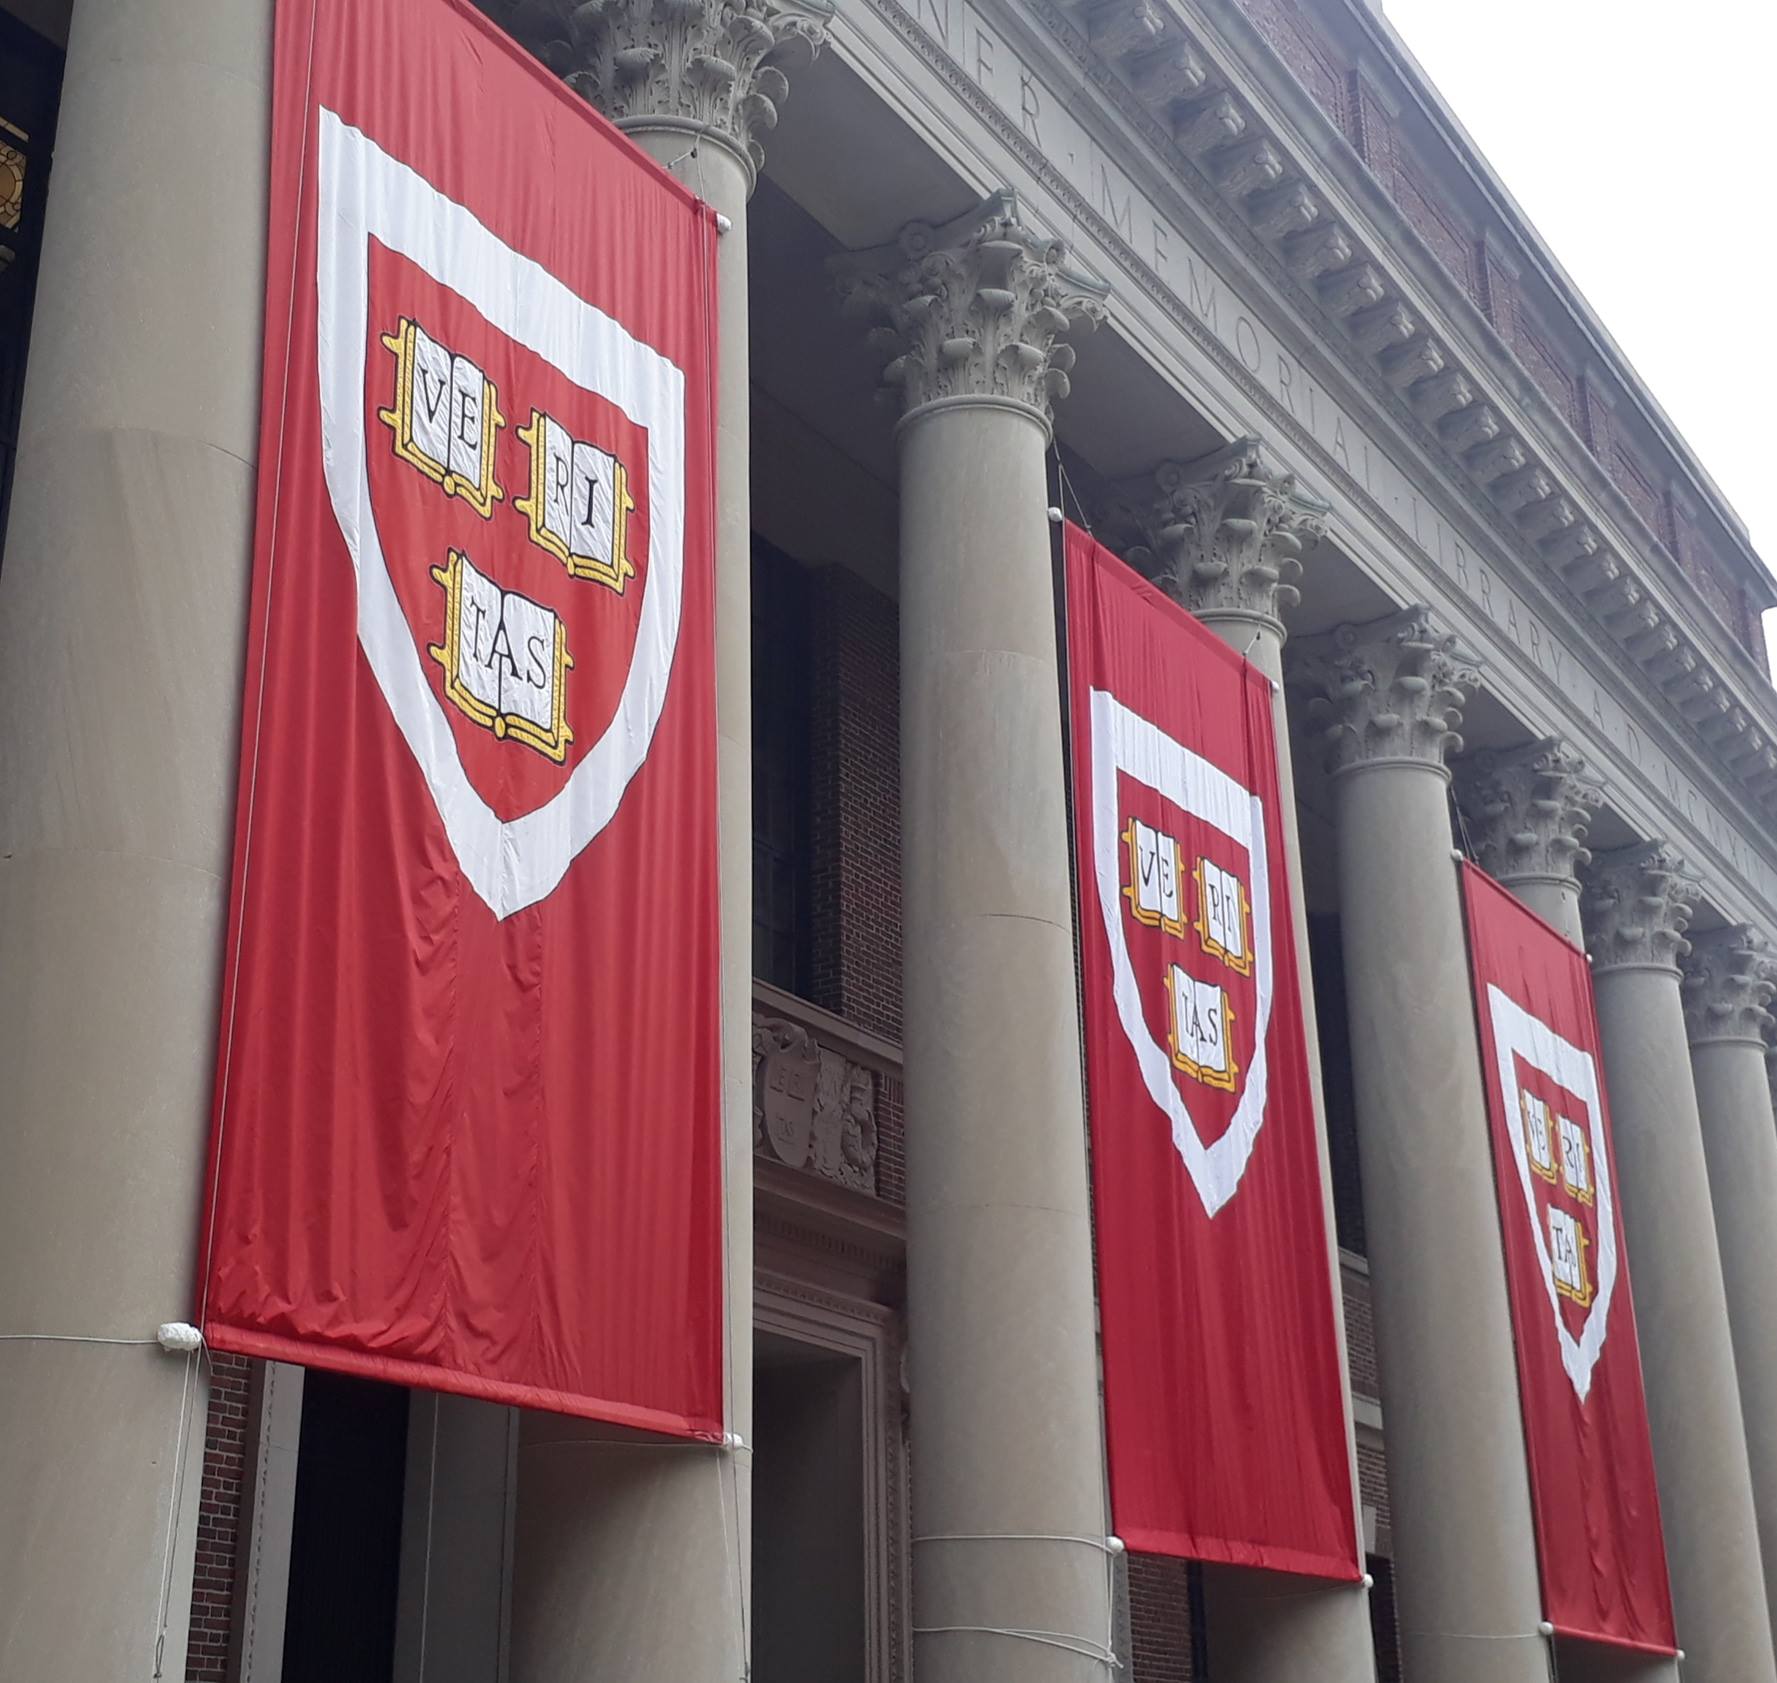 Veritas banners at Harvard